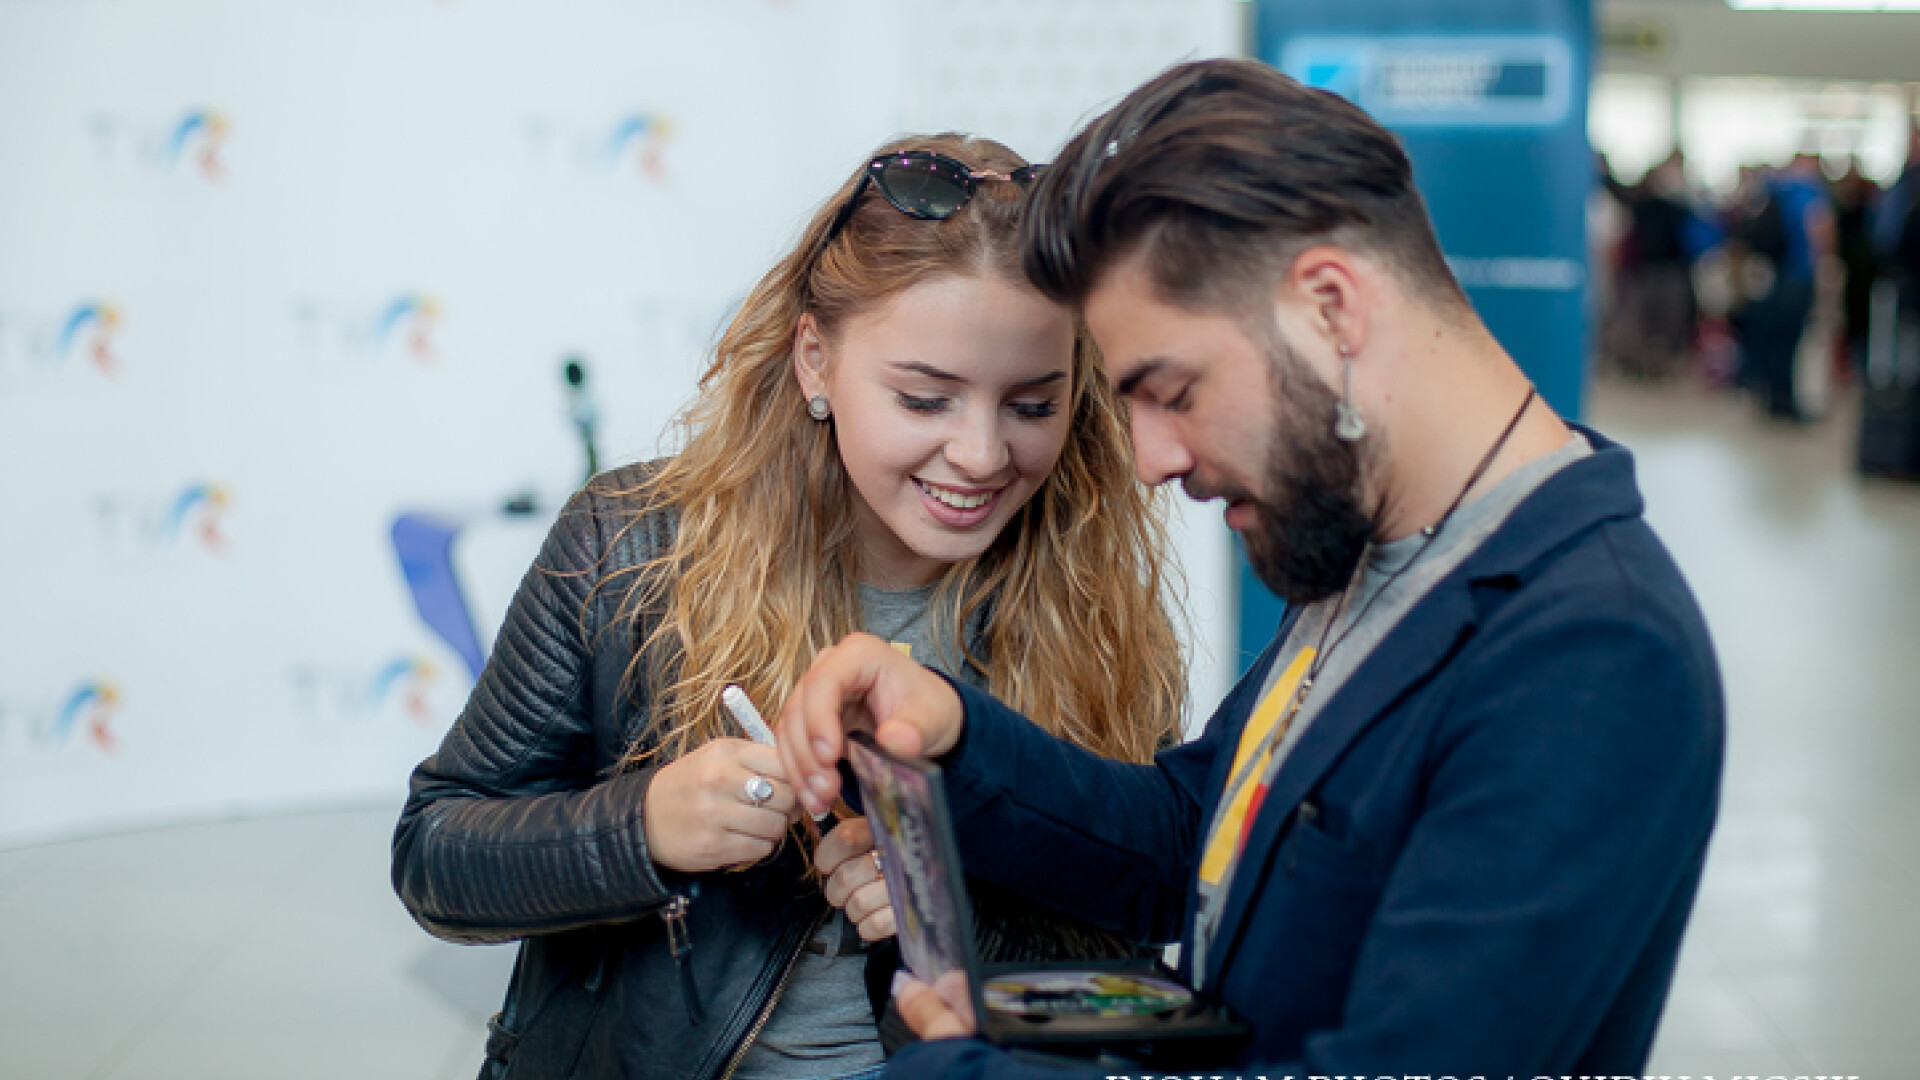 Ilinca Băcilă și Alex Florea, reprezentanţii României la Eurovision Song Contest 2017